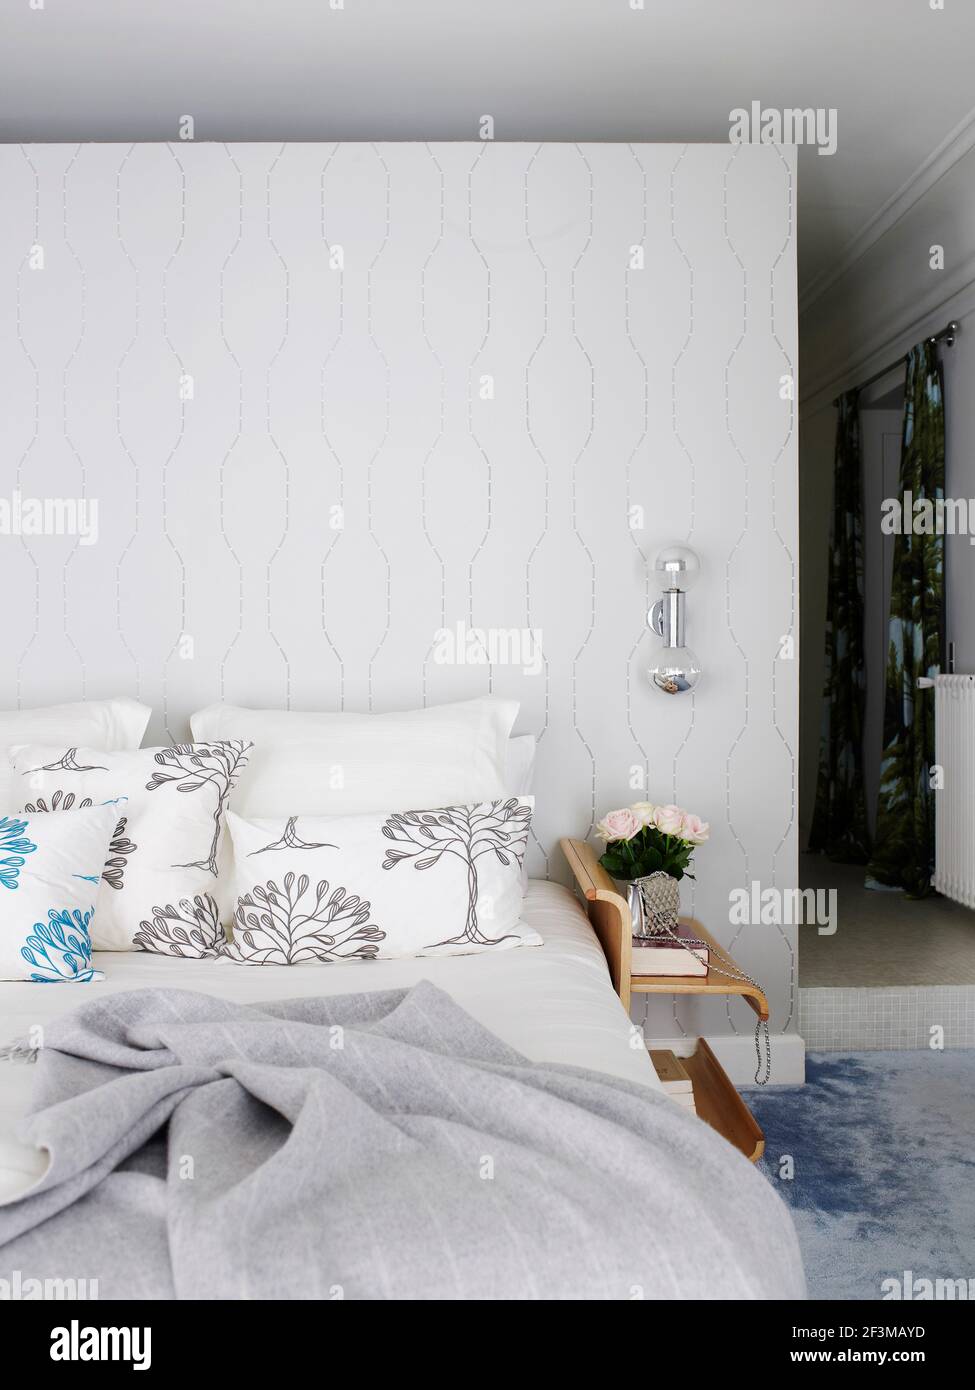 Schlafzimmer mit Trennwand, dekoratives Licht und Schnittblumen auf  Nachttisch in Französisch Wohnheim Stockfotografie - Alamy